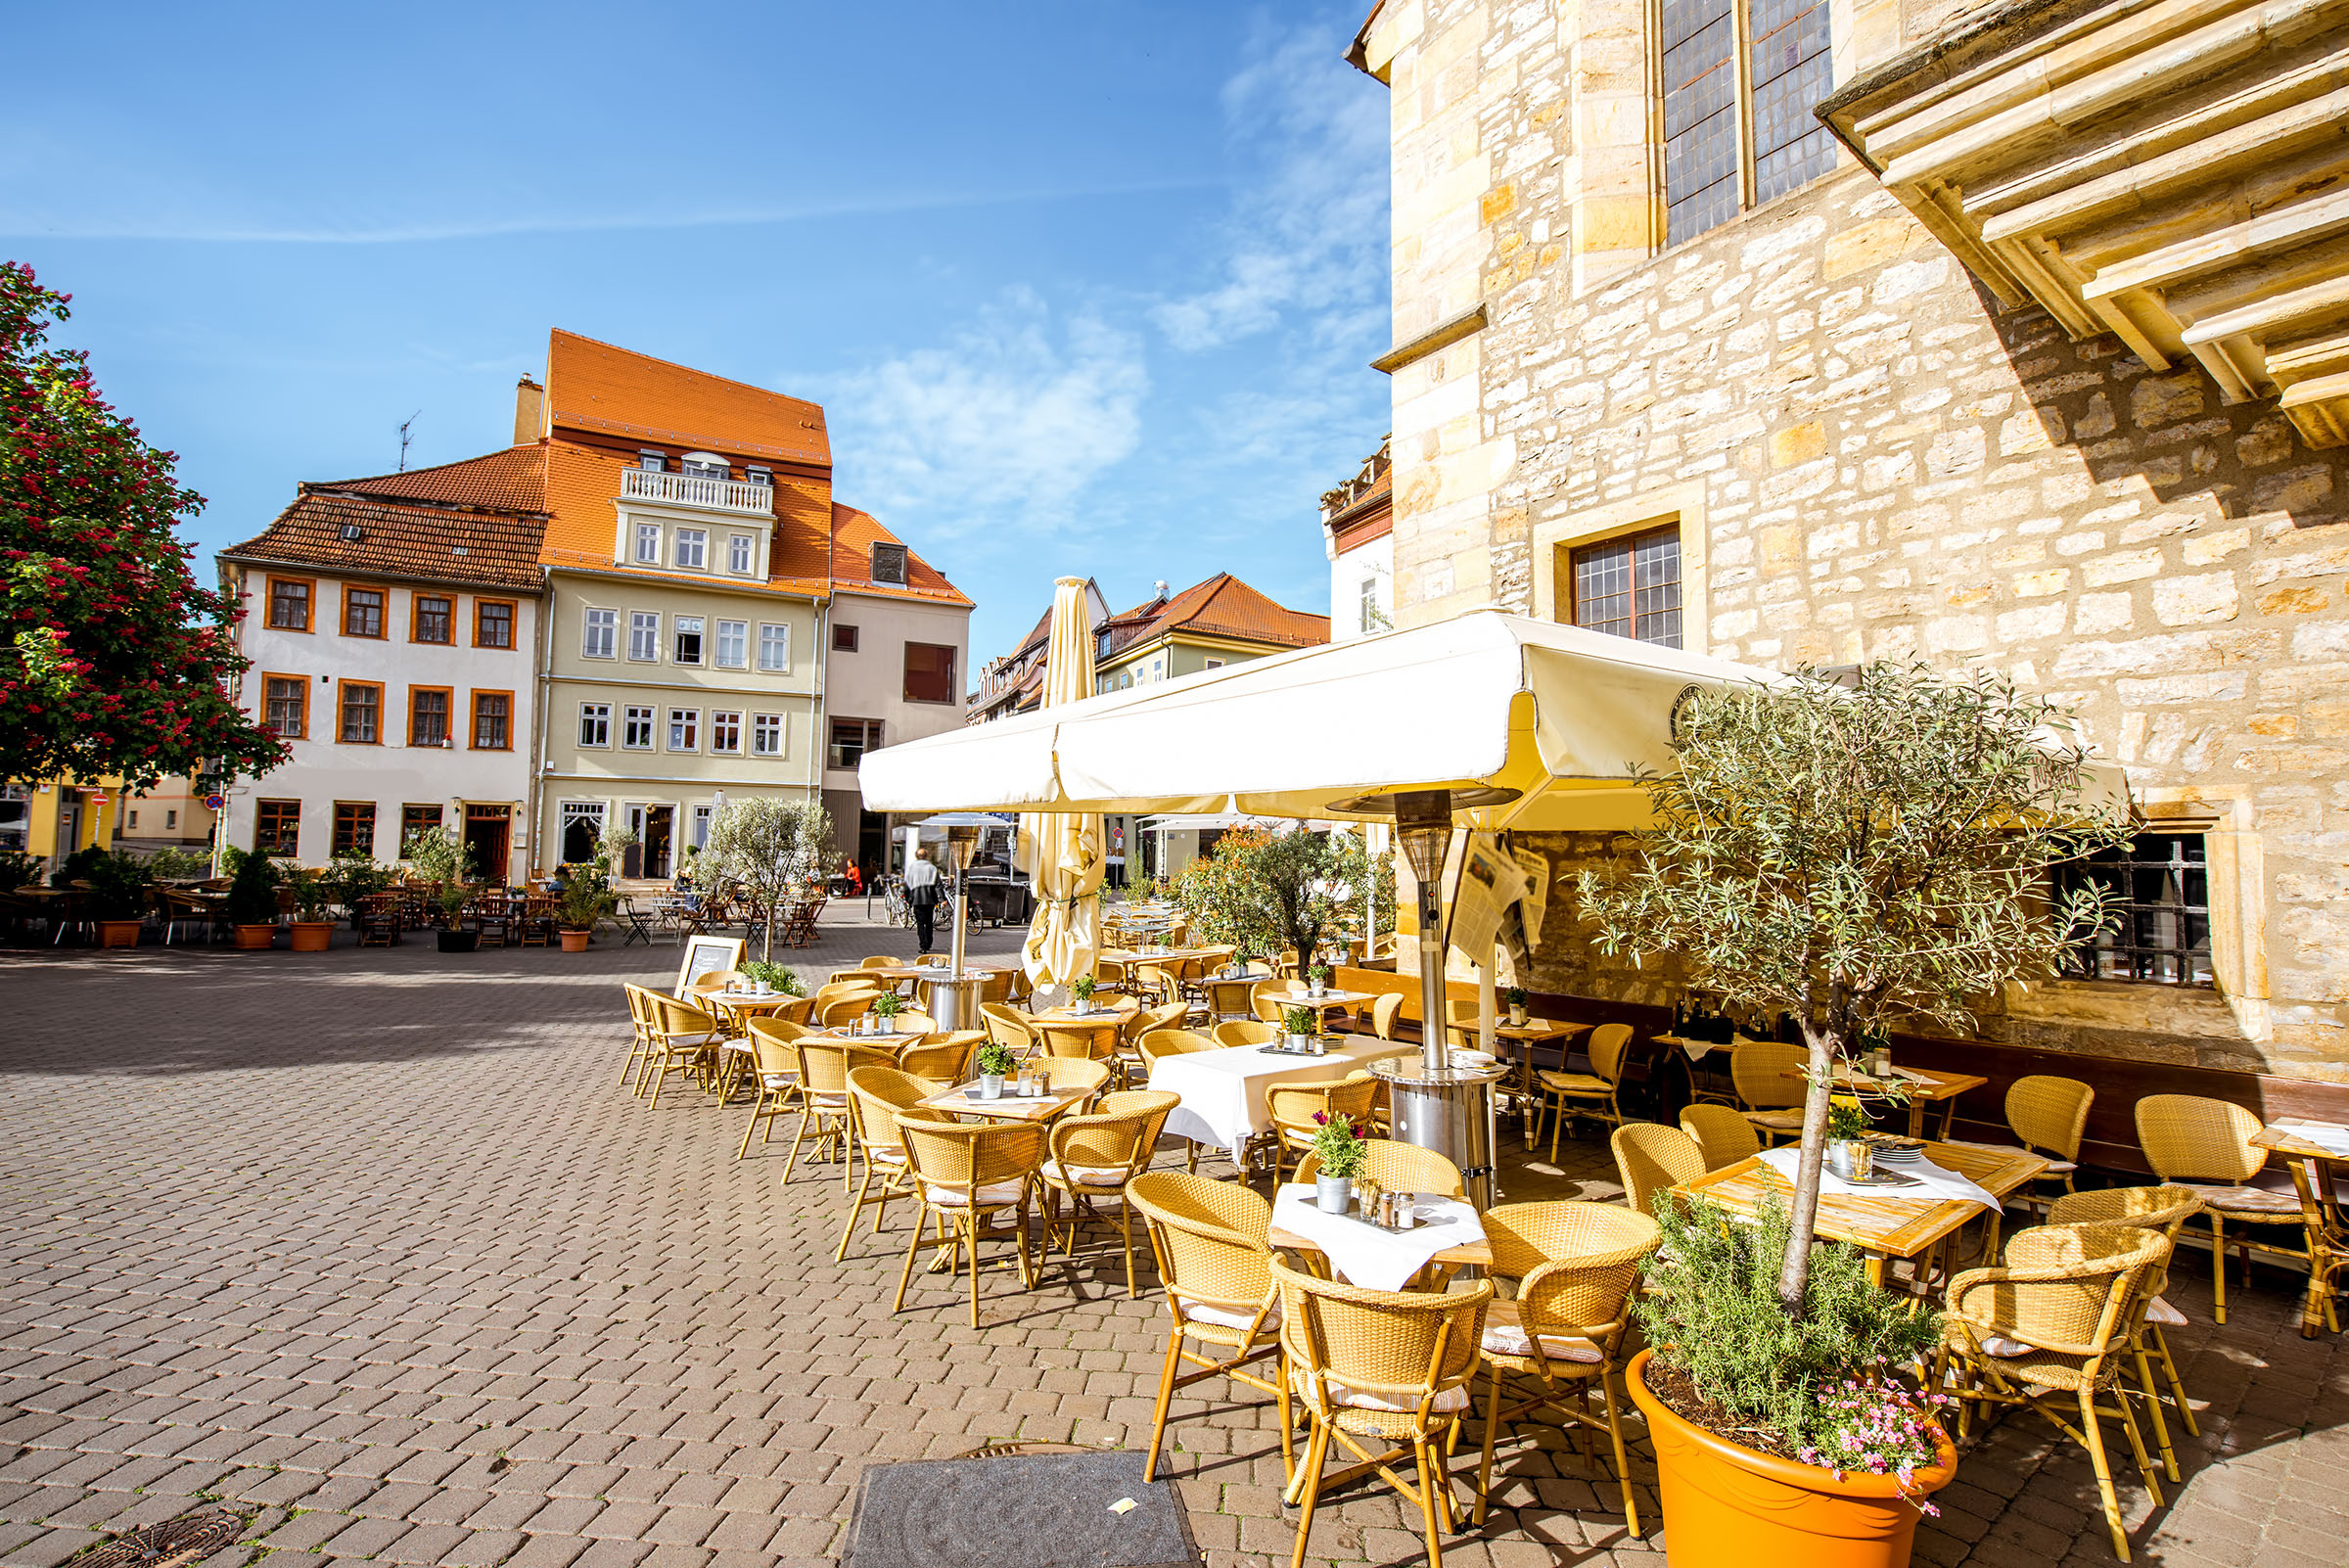 Terrasse eines Restaurants am Wenigemarkt in Erfurt